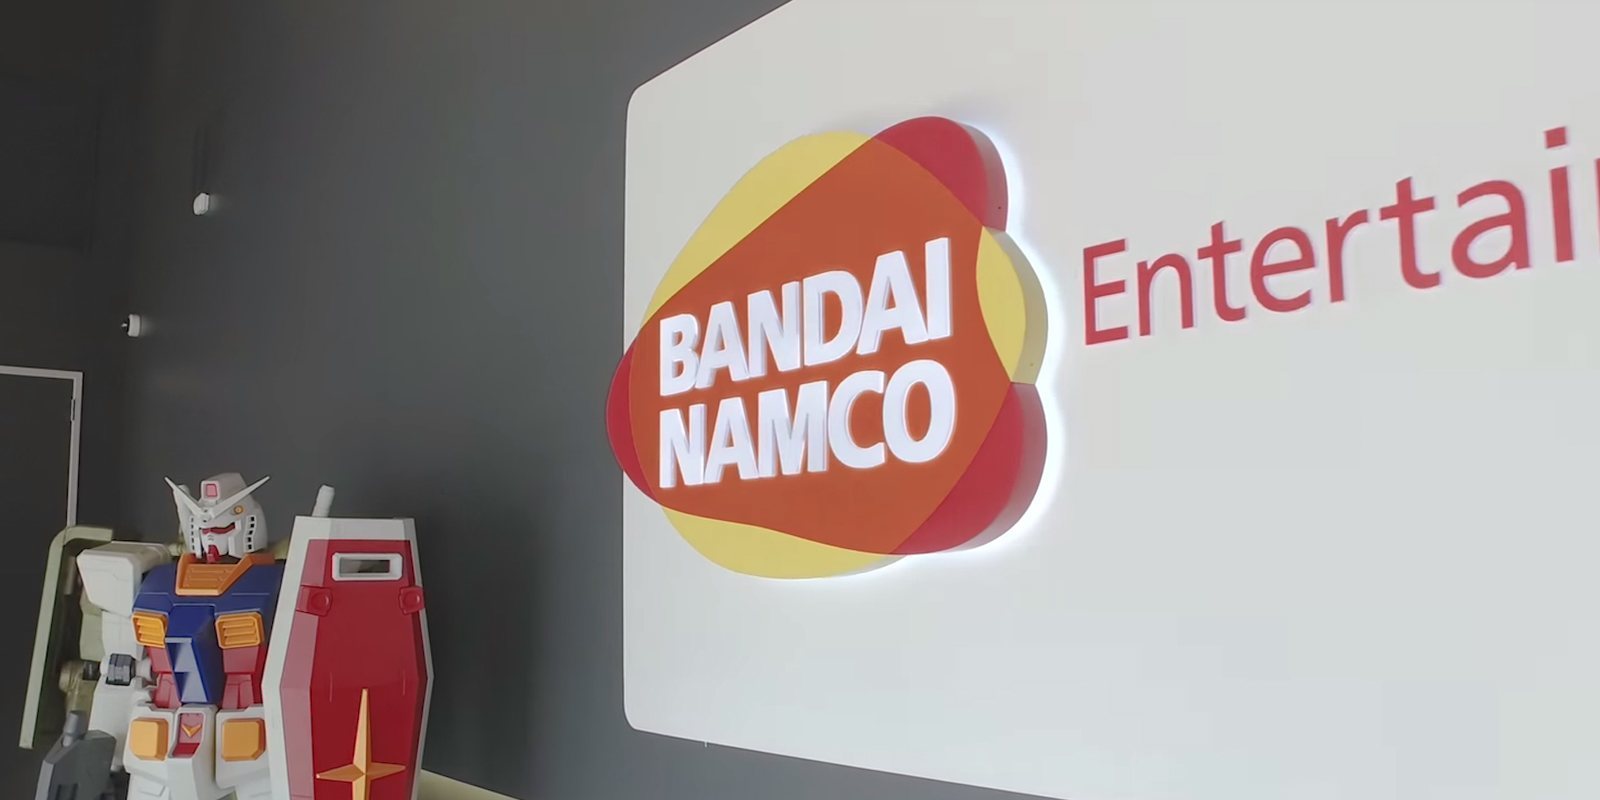 Bandai Namco recibe una amenaza de bomba en sus oficinas de Estados Unidos